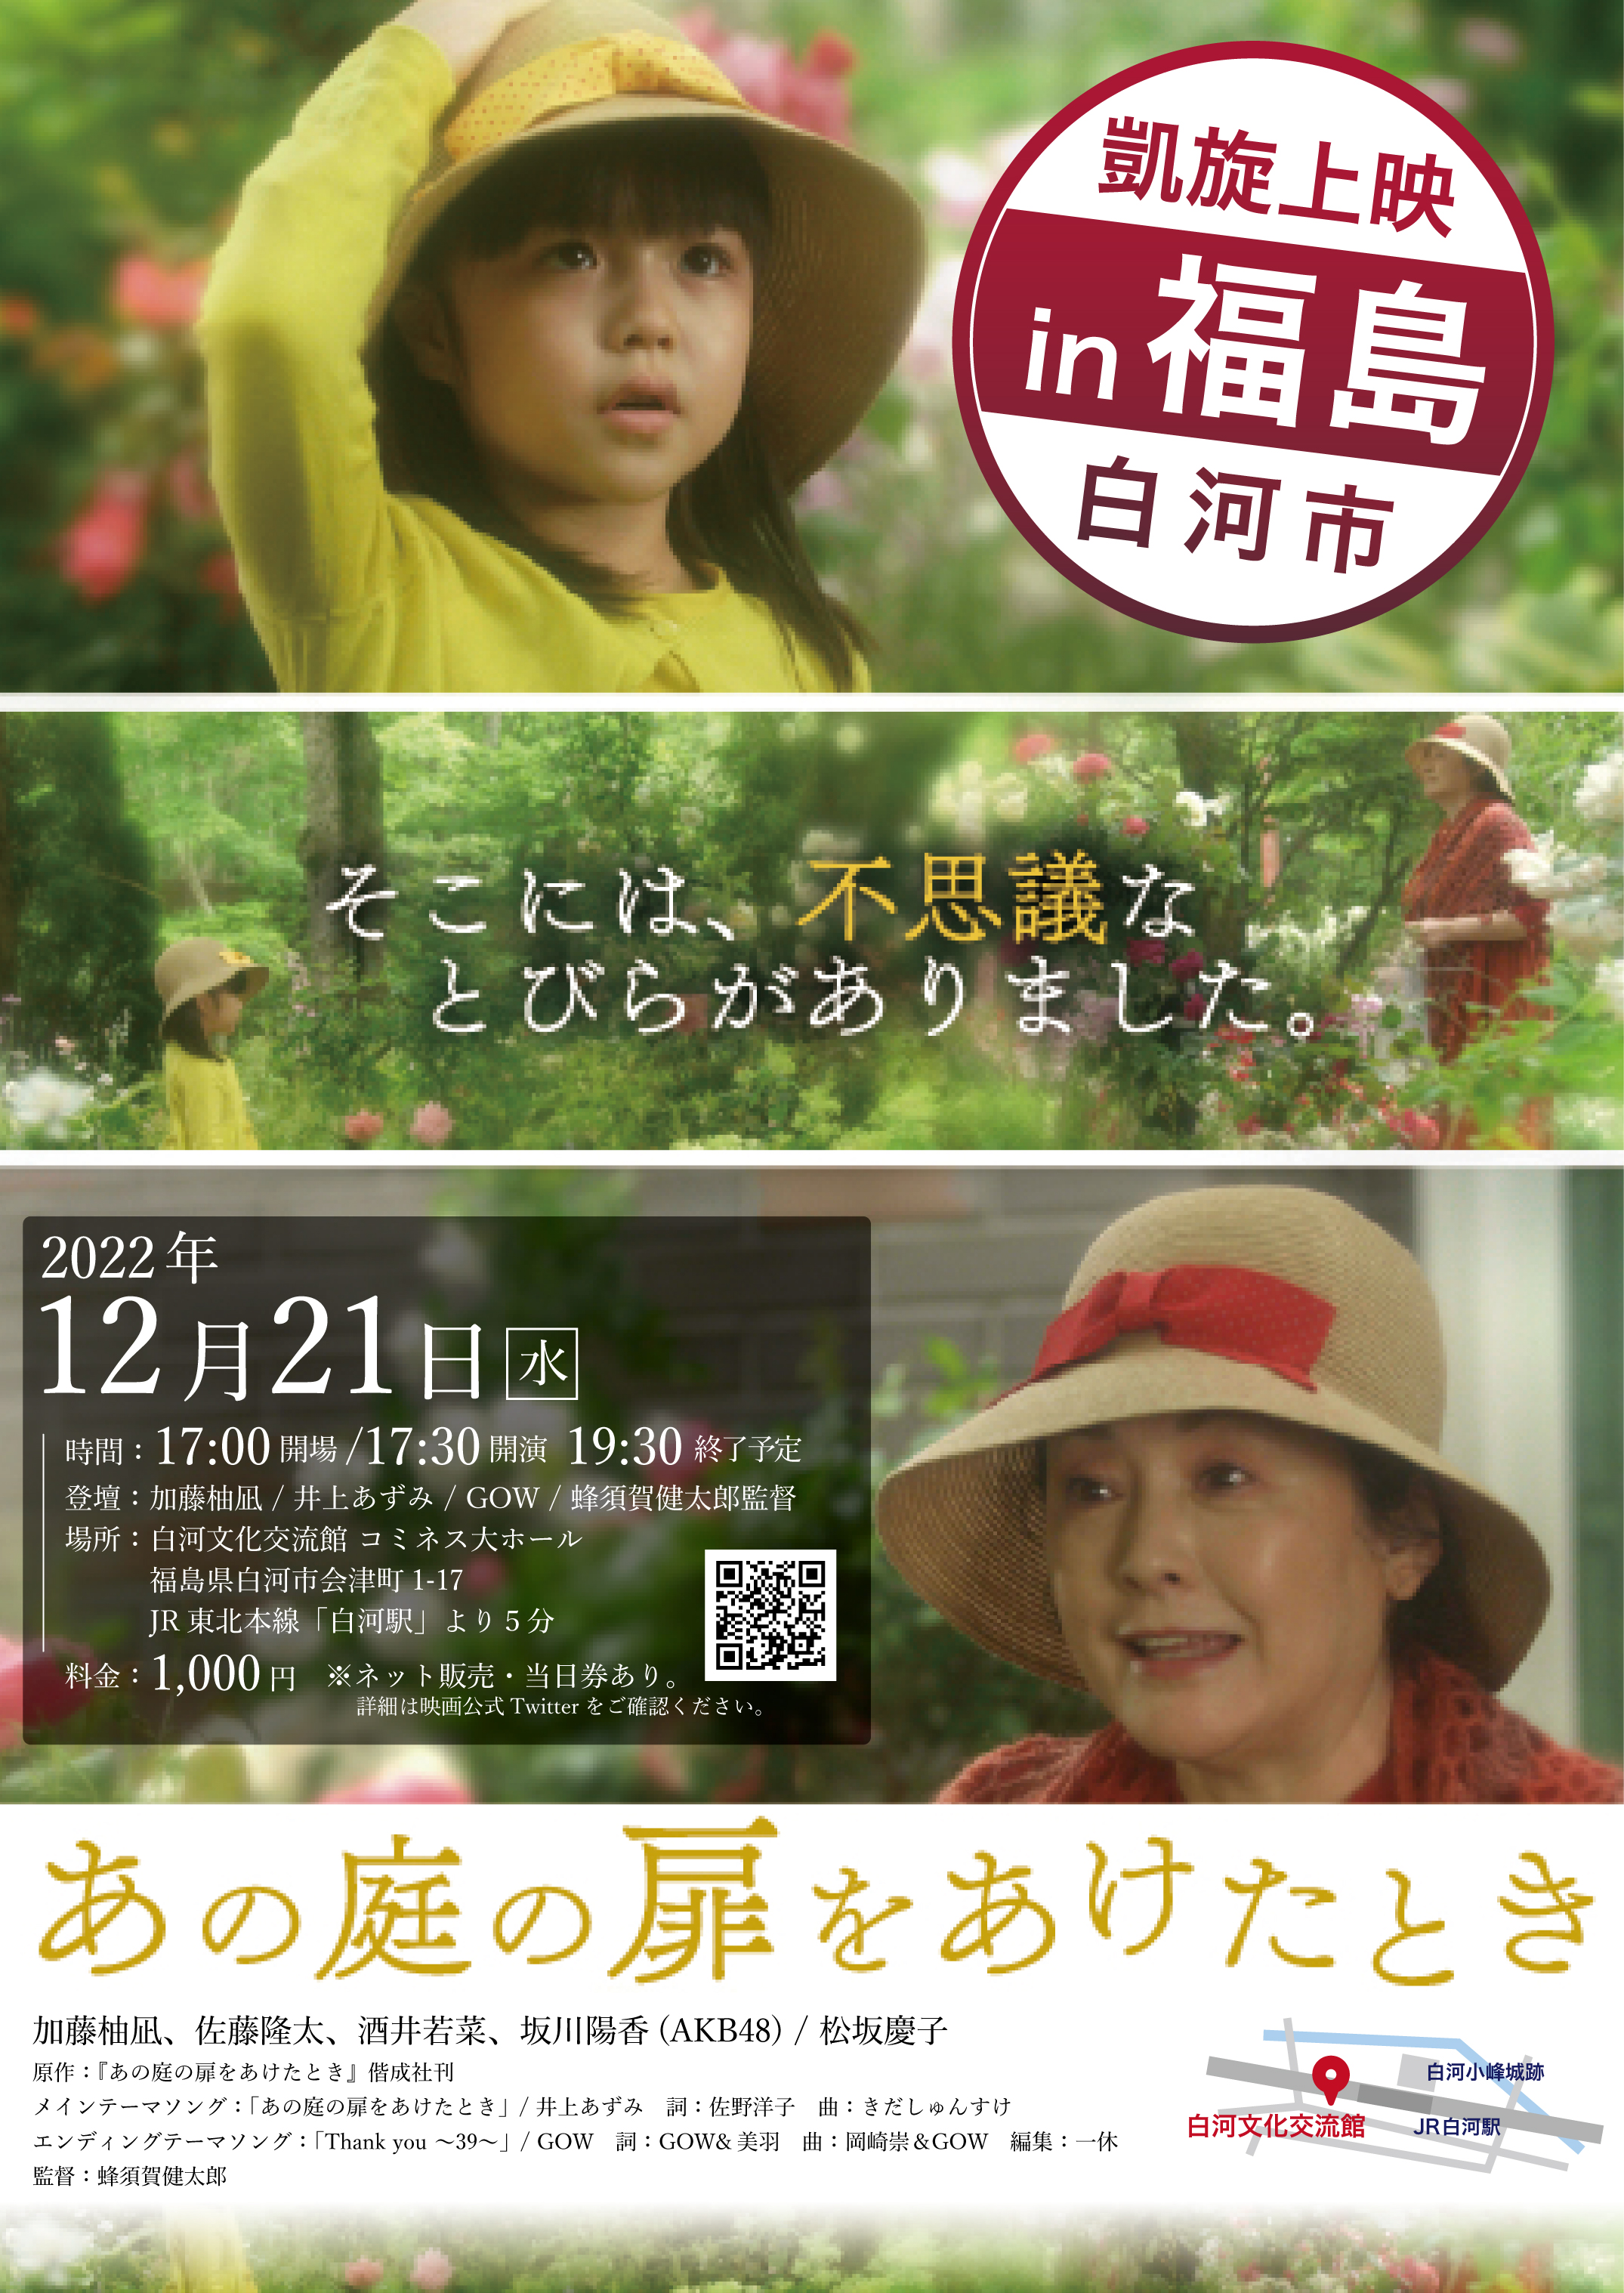 12月21日(水)映画「あの庭の扉をあけたとき」凱旋上映 in 福島